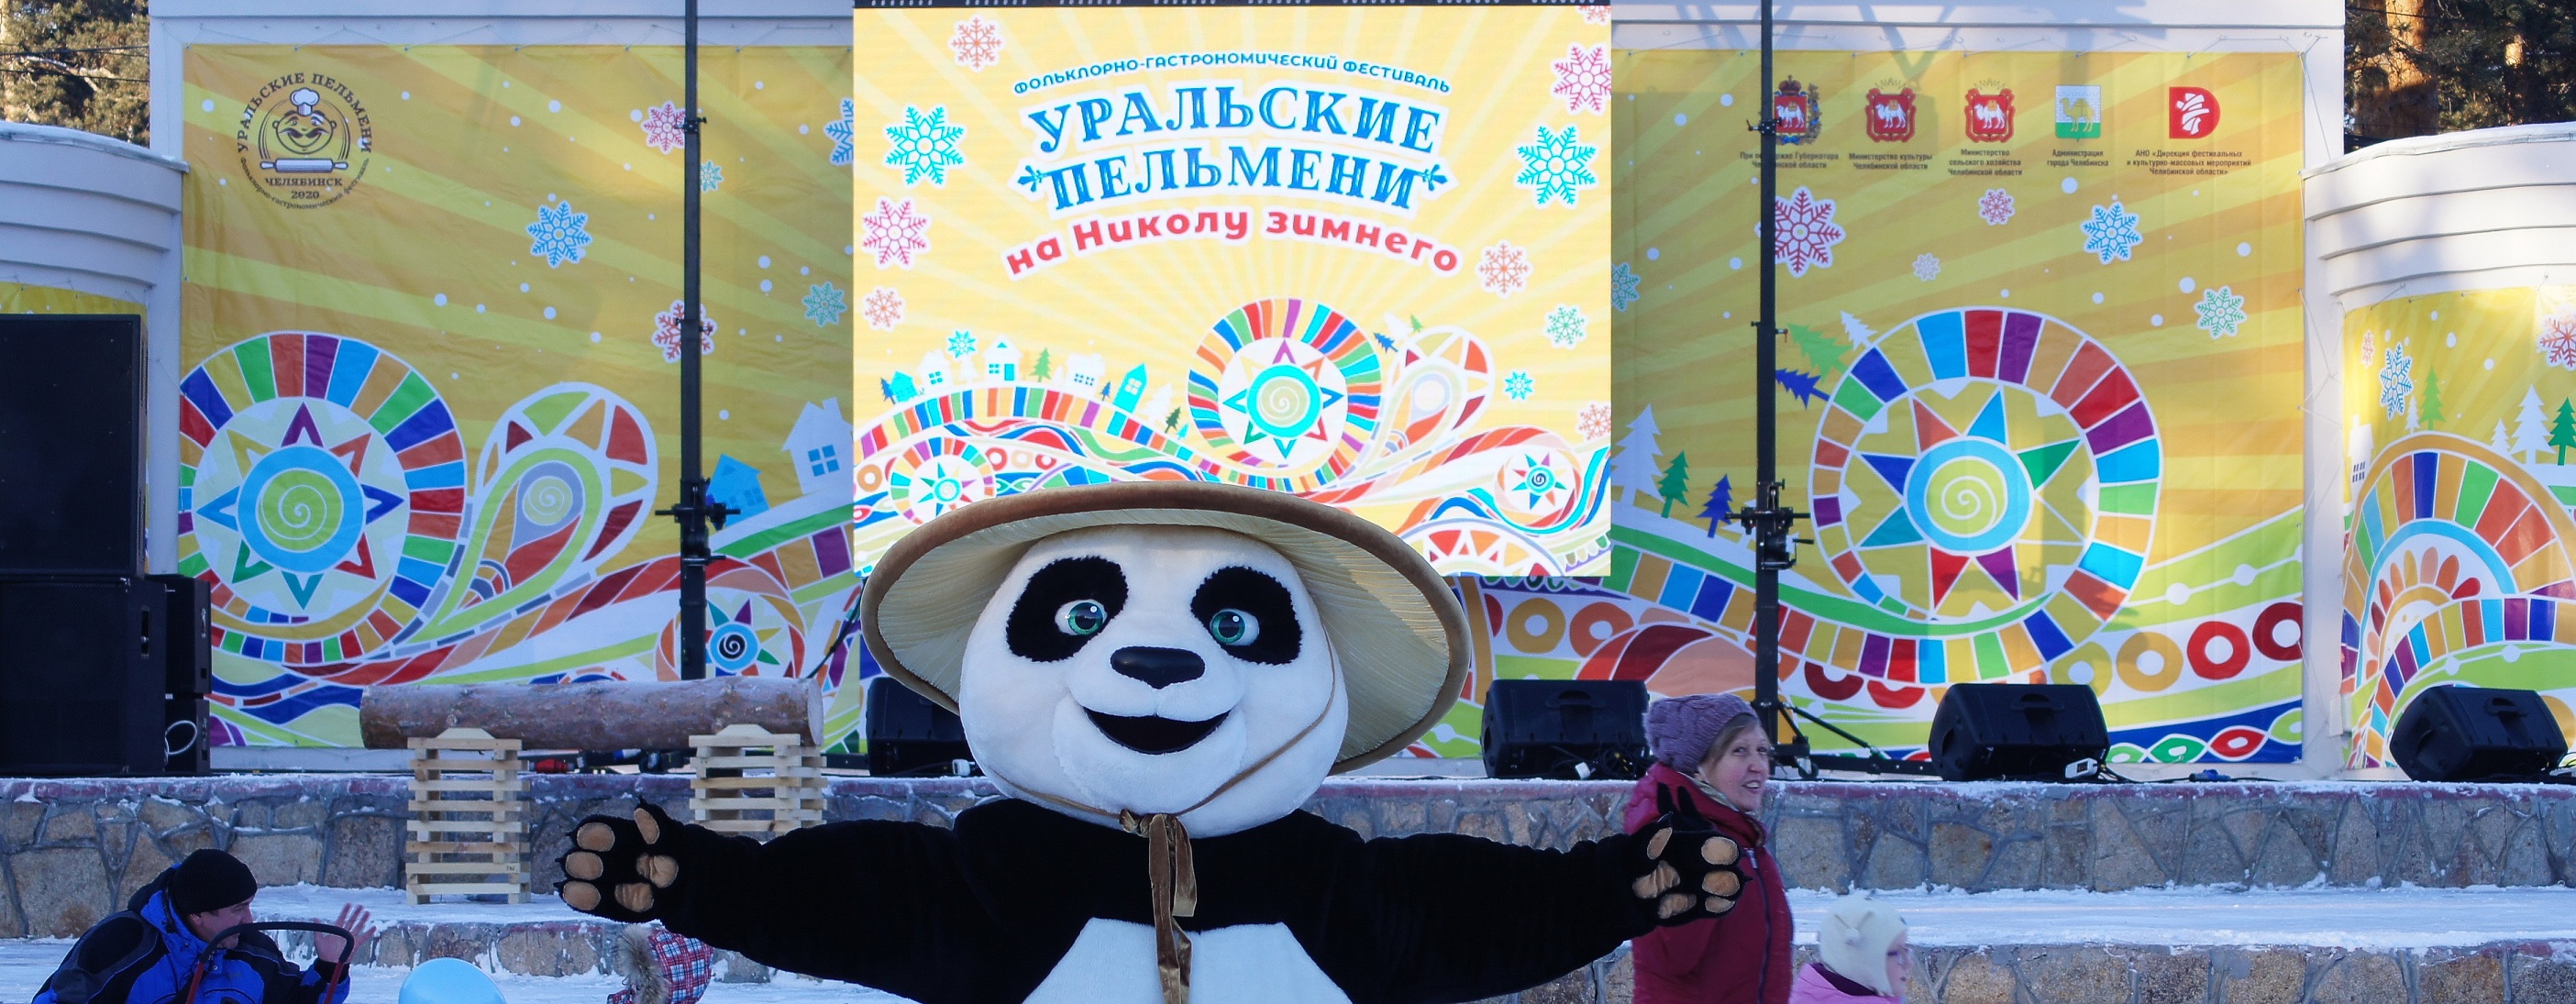 Один из лучших гастрономических фестивалей России пройдет в Челябинске 17 декабря